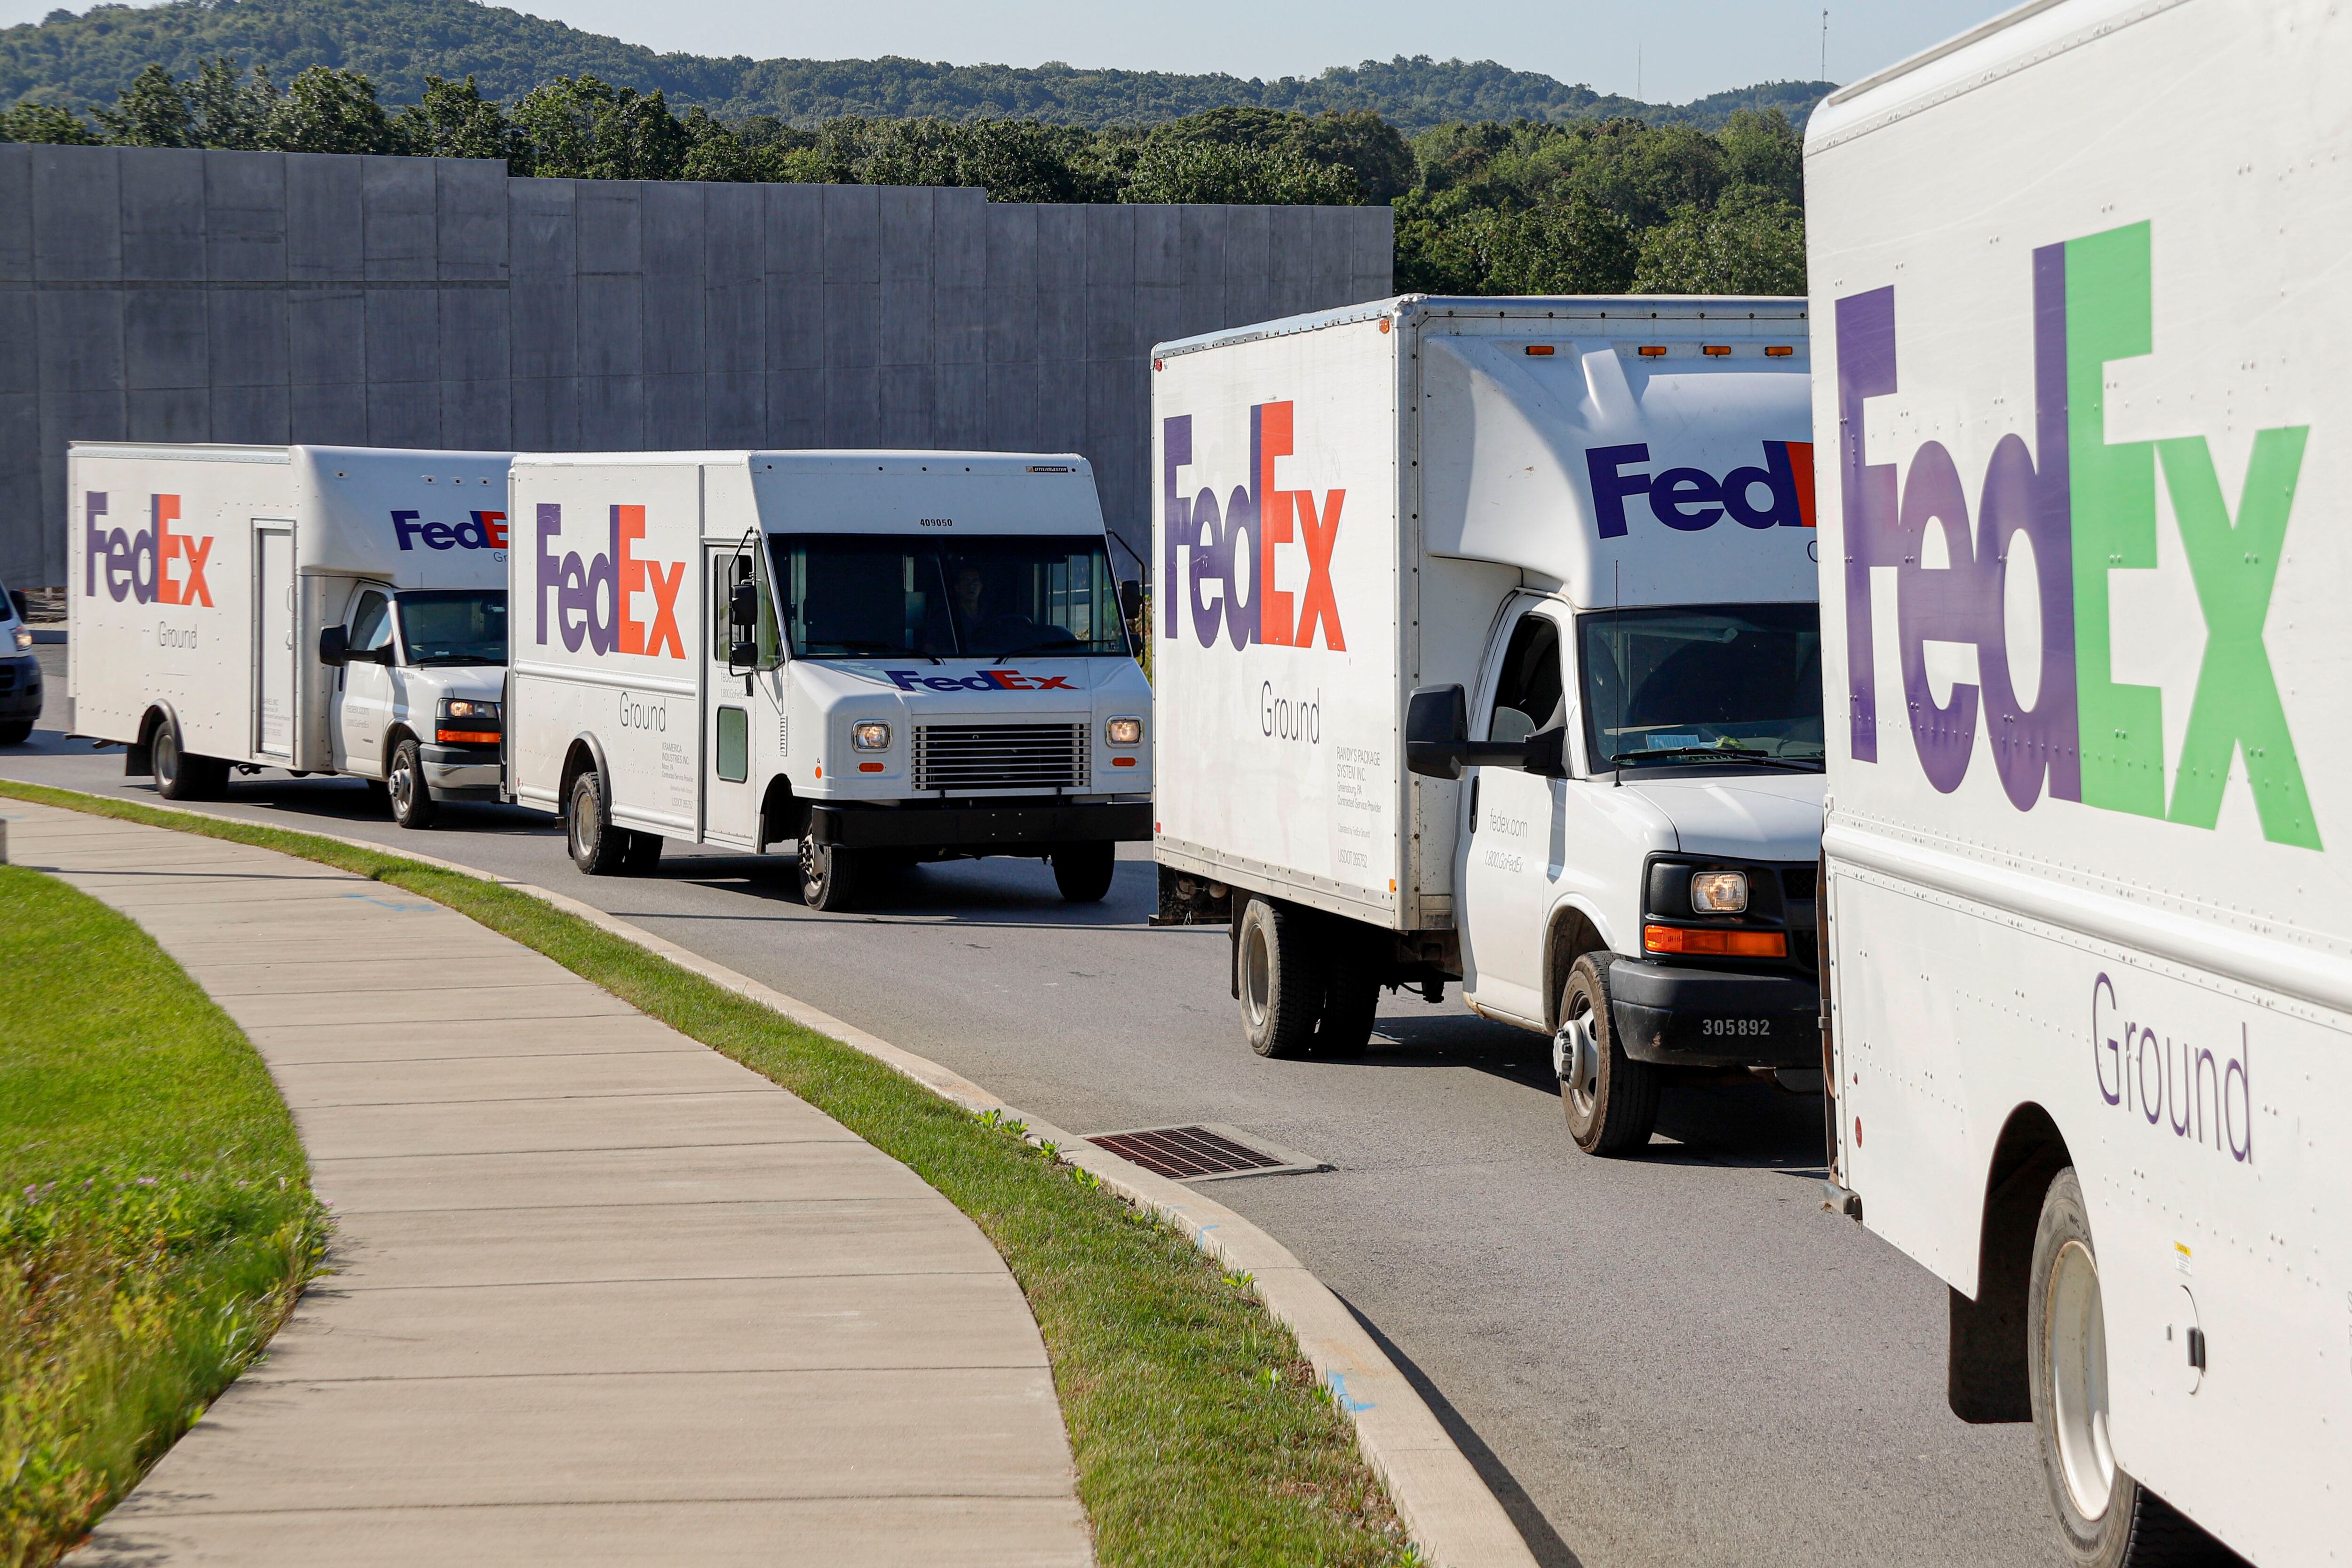 En una transición programada en etapas, hasta junio de 2024, las unidades  FedEx Express, FedEx Ground, FedEx Services y otras compañías operativas se consolidarán en la compañía unificada Federal Express Corporation, anunció la compañía este 5 de abril.